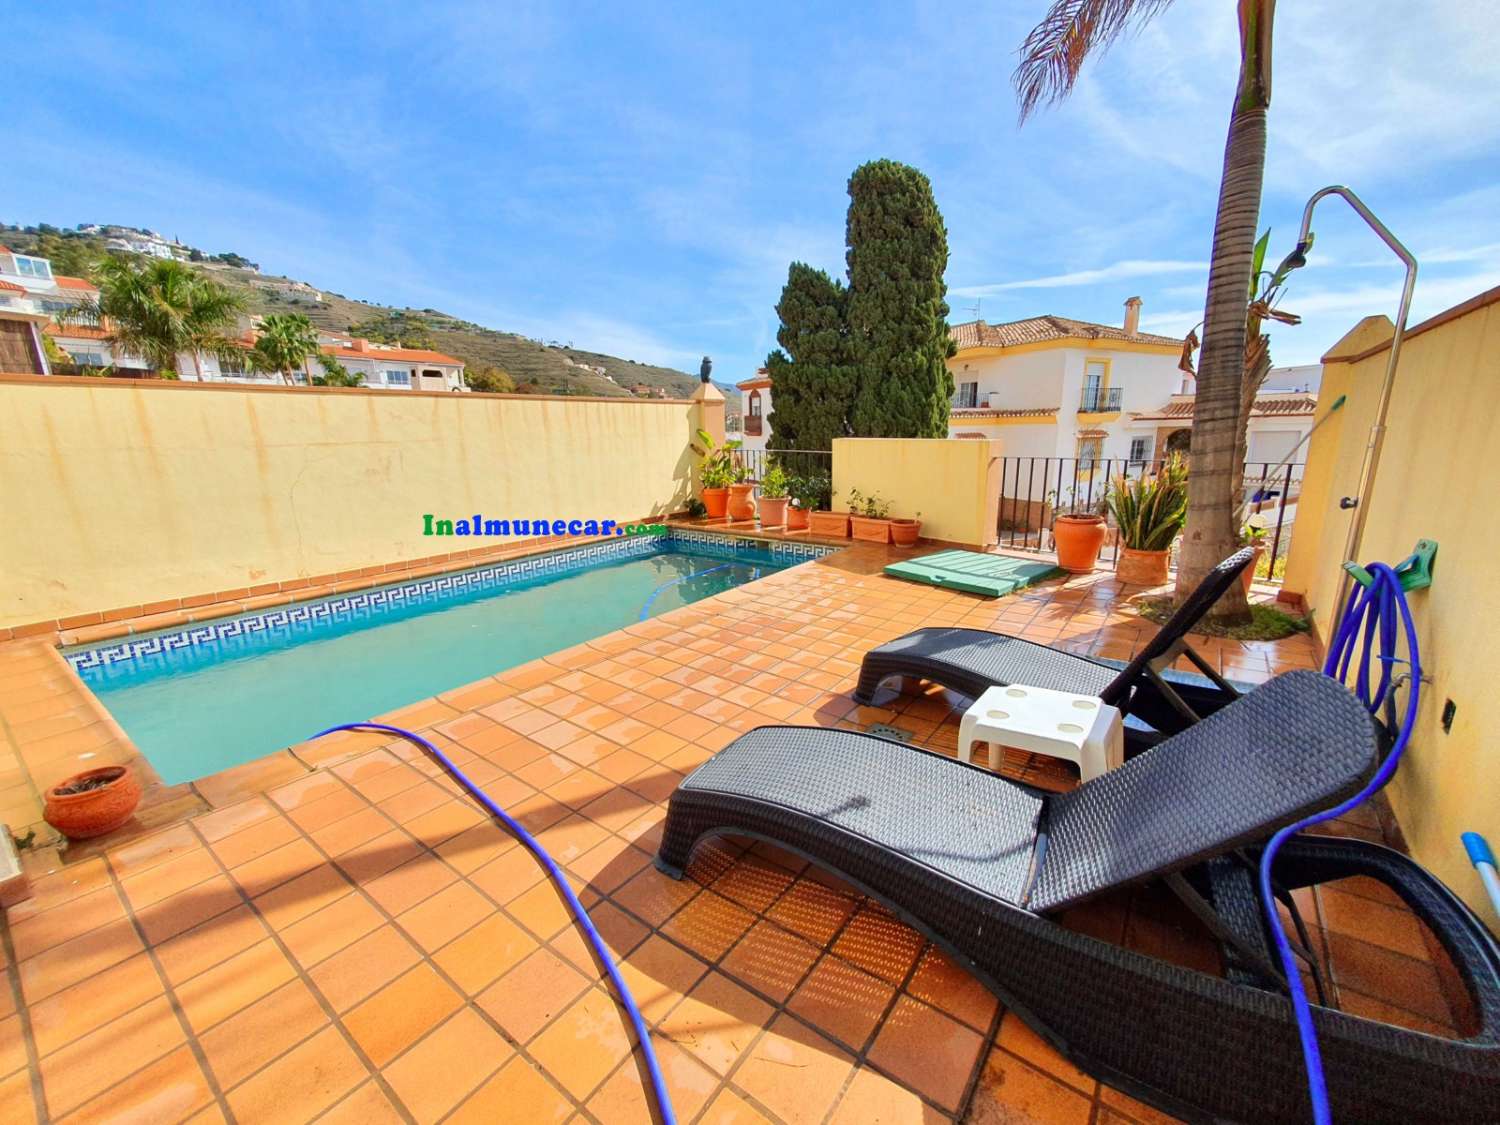 Rækkehus til salg i Almuñecar, meget solrig og med privat pool.